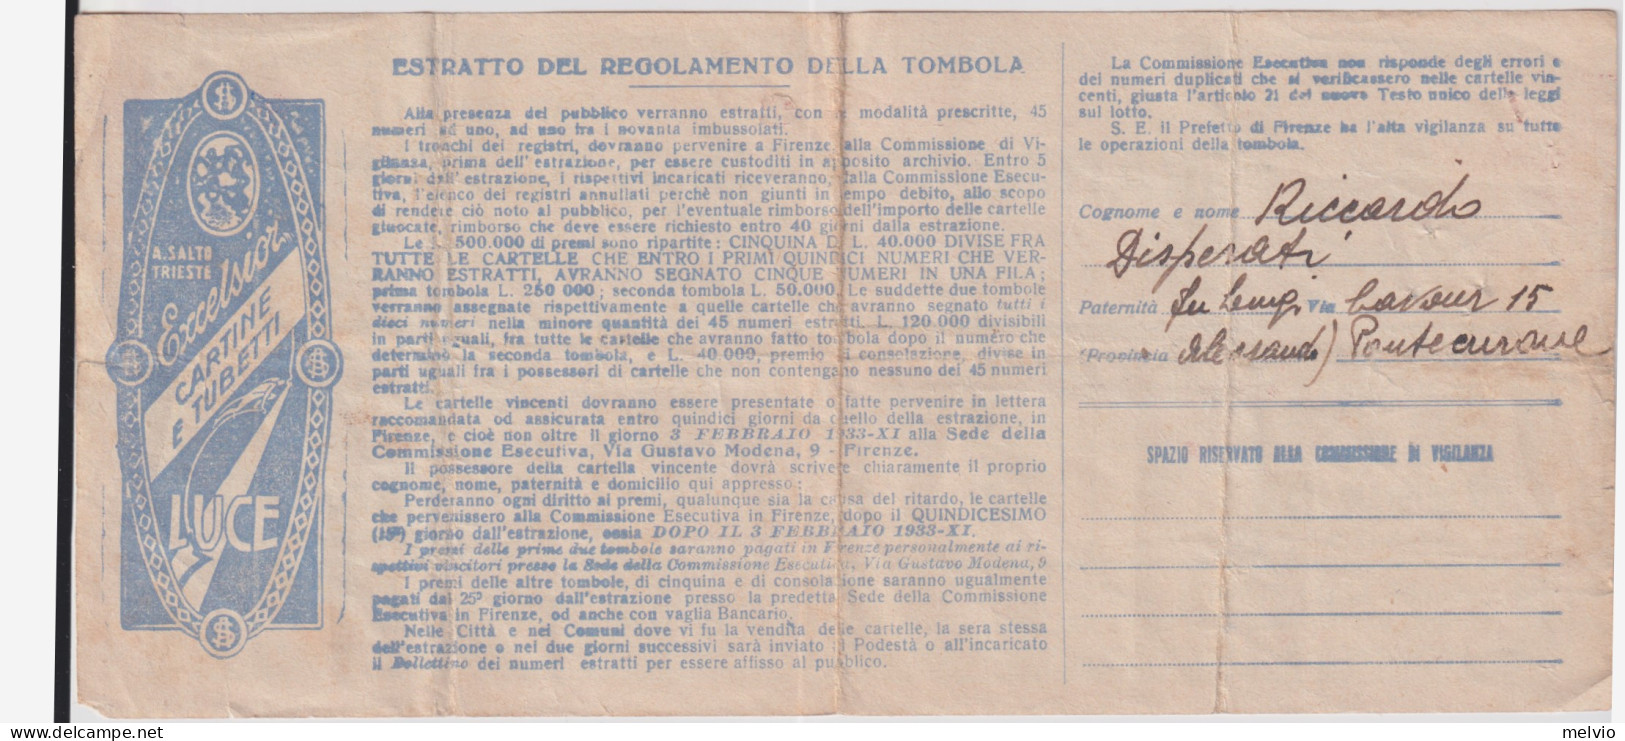 1933-cartella Della Grande Tombola Nazionale Con Estrazione A Firenze - Biglietti Della Lotteria